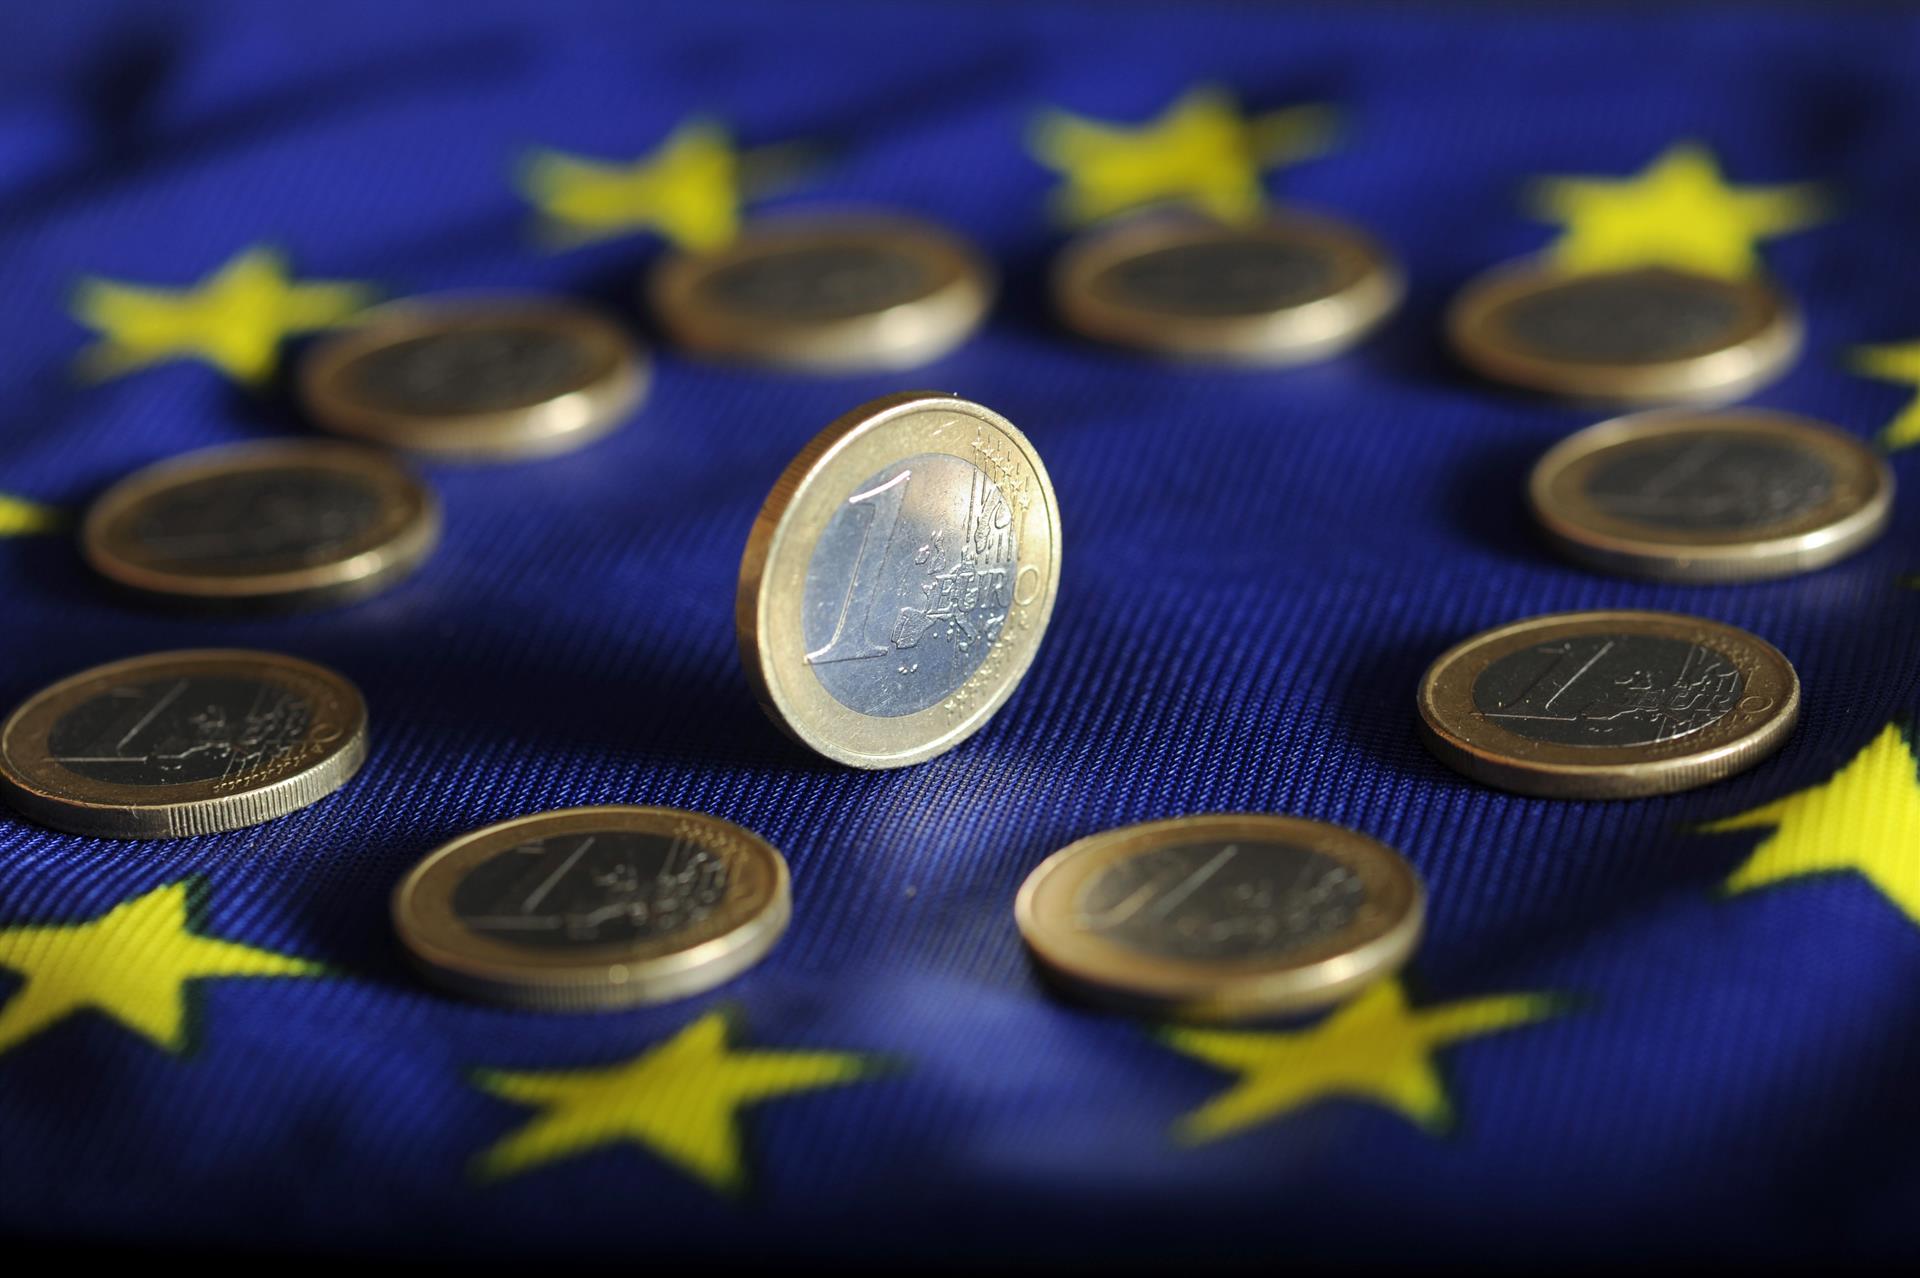 La inflación de la eurozona marca un récord del 5% en diciembre